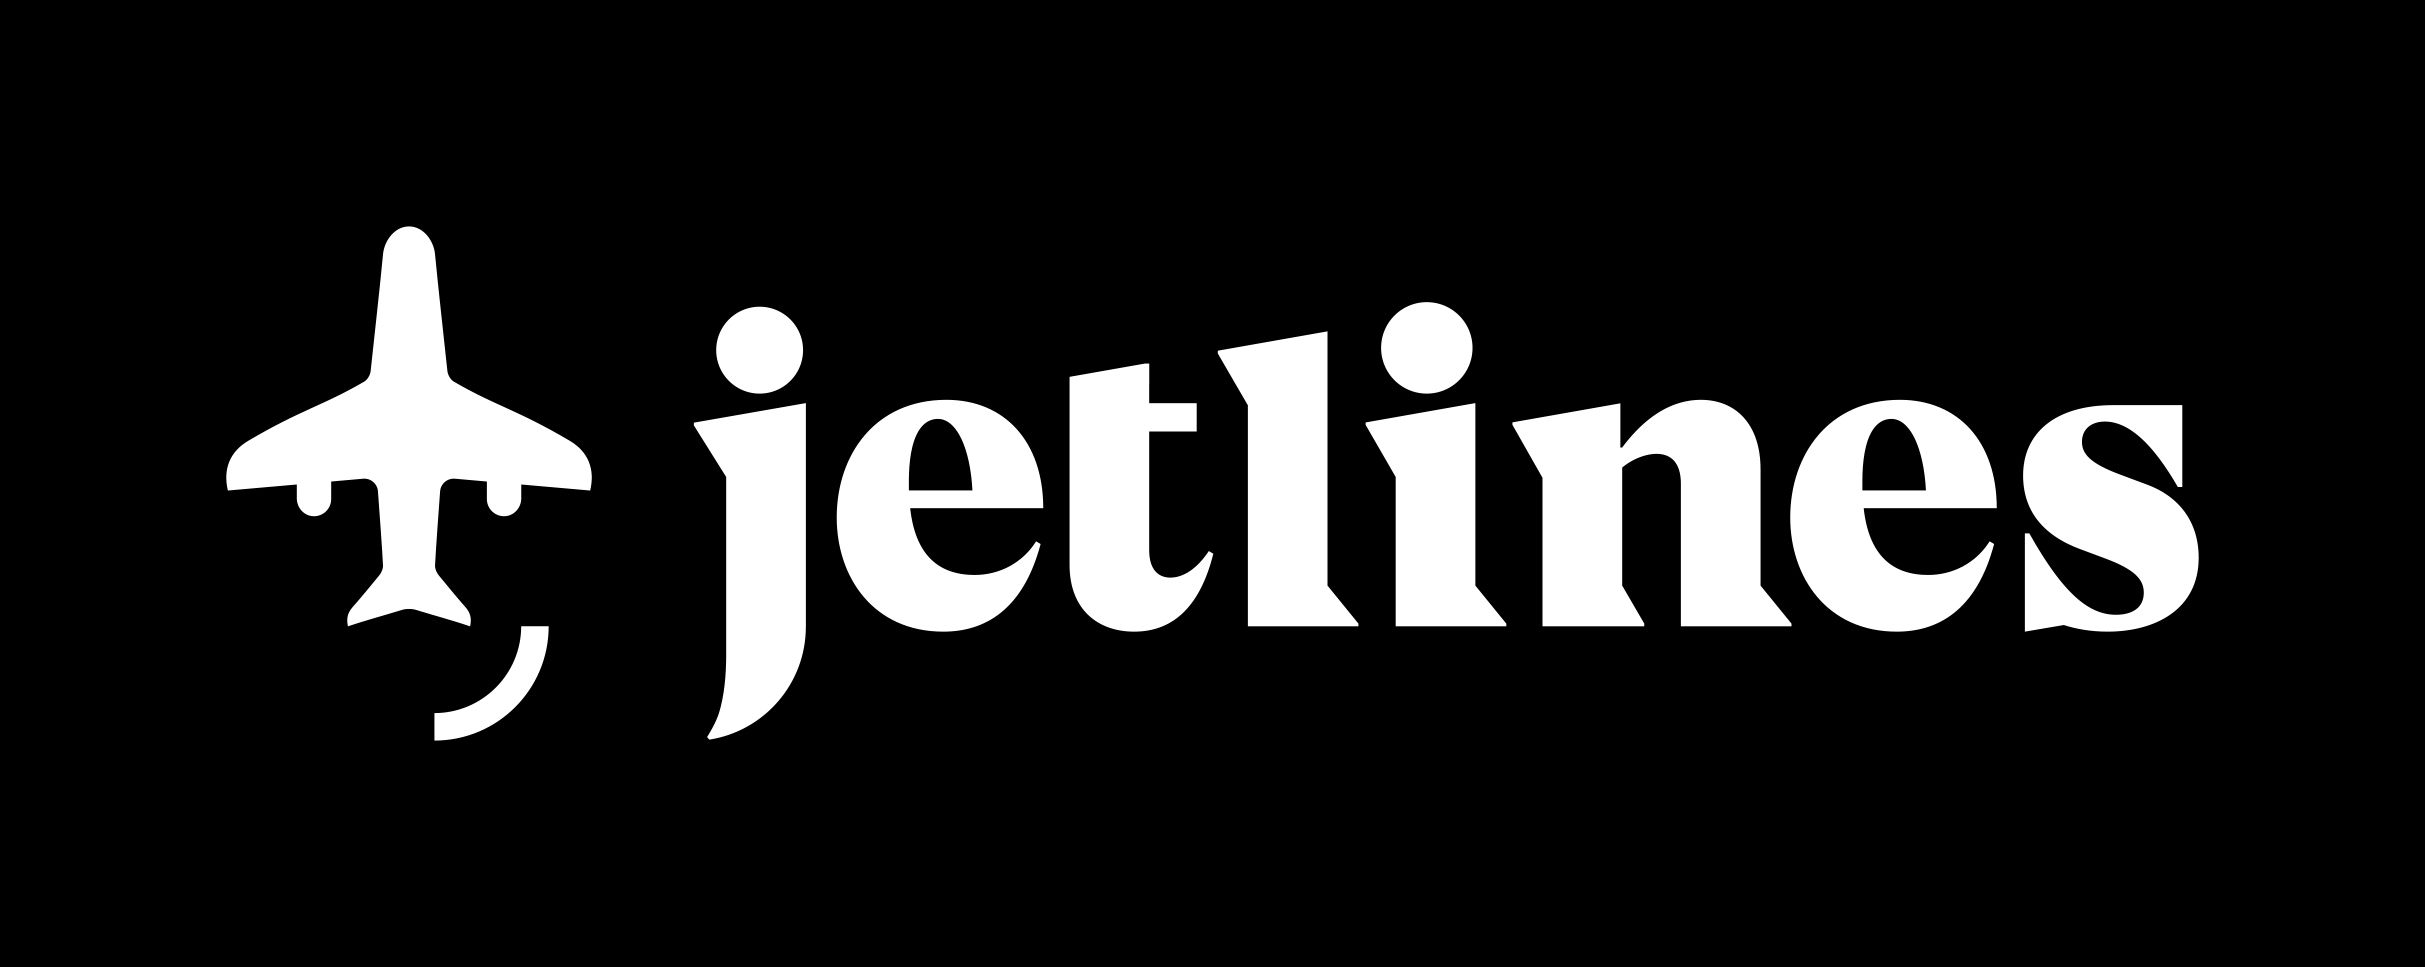 加拿大廉价航空Jetlines推出有趣新Logo　摄影：Jetlines官网